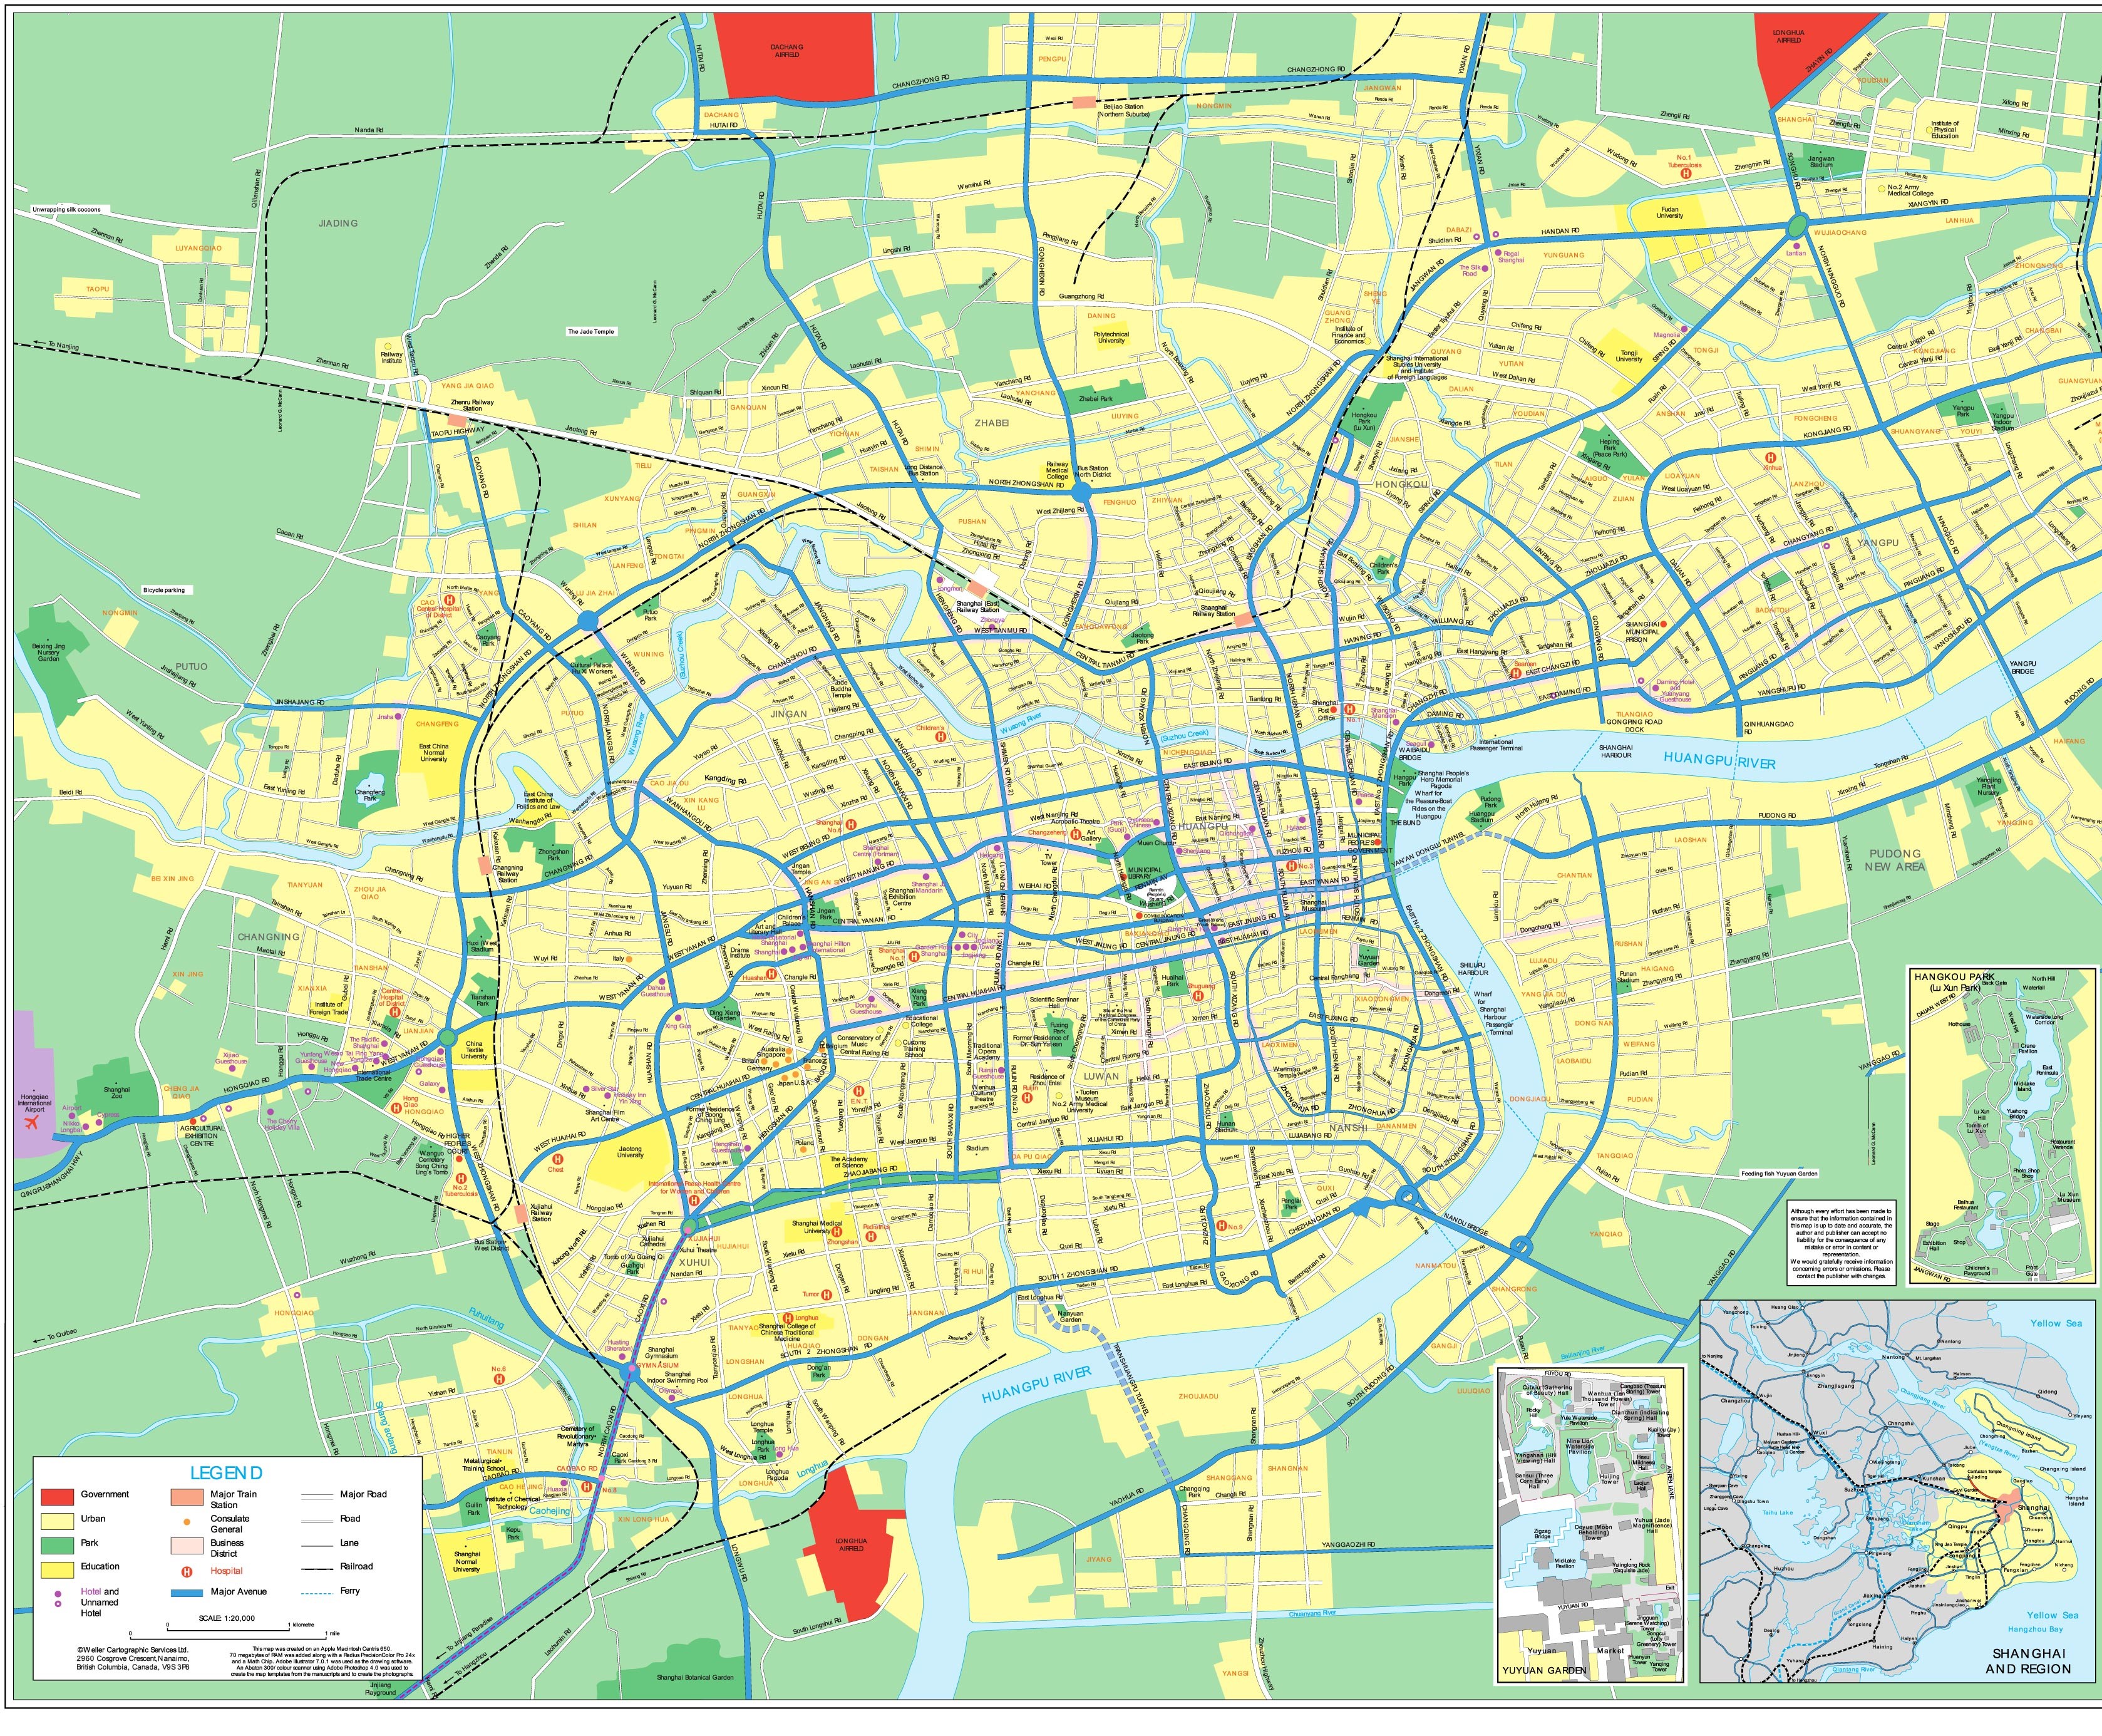 Карта Шанхая (Китай) на русском языке, расположение на карте мира сгородами, метро, центра, районов и округов